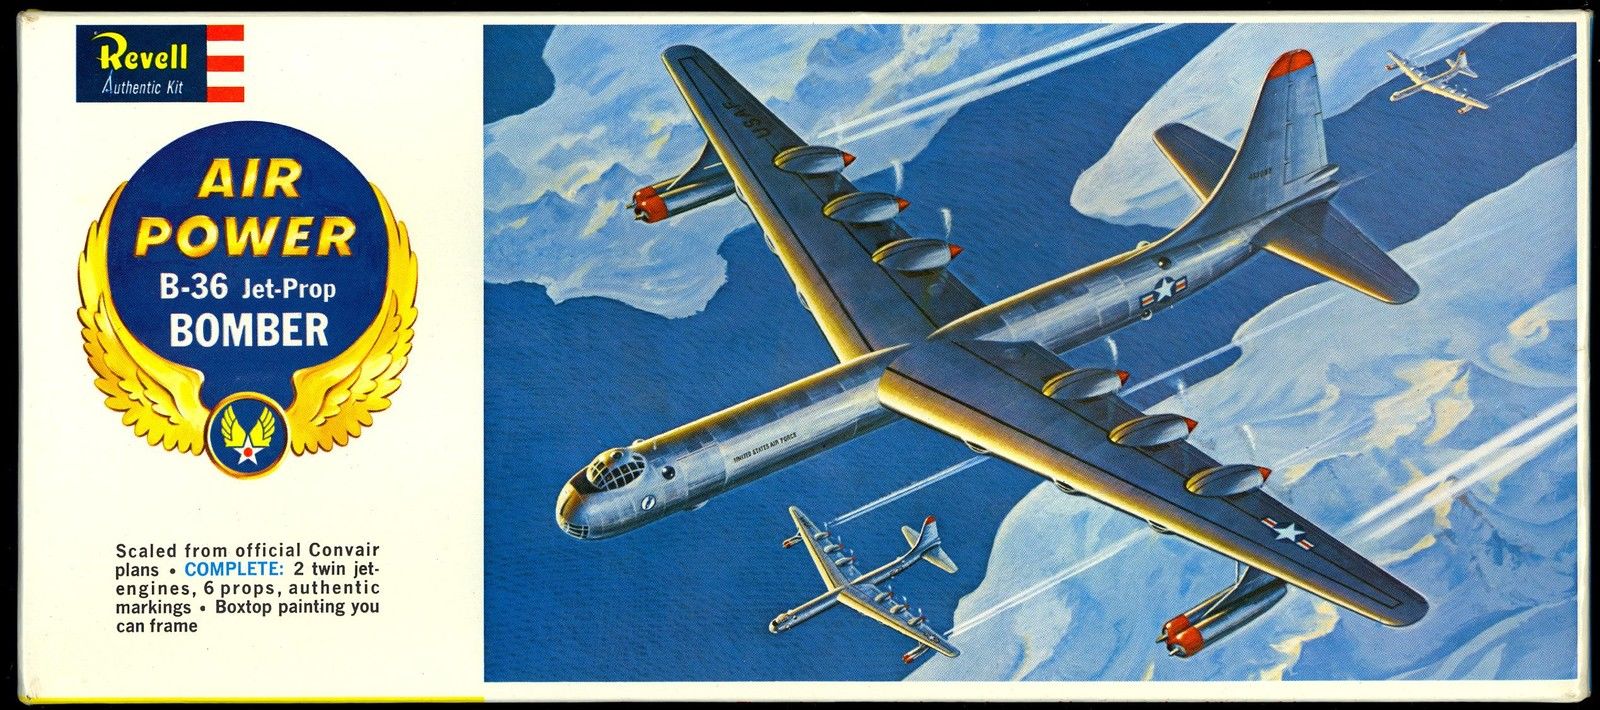 B-36 Models, B-36 Bomber Models, B-36 Bomber Model Airplanes